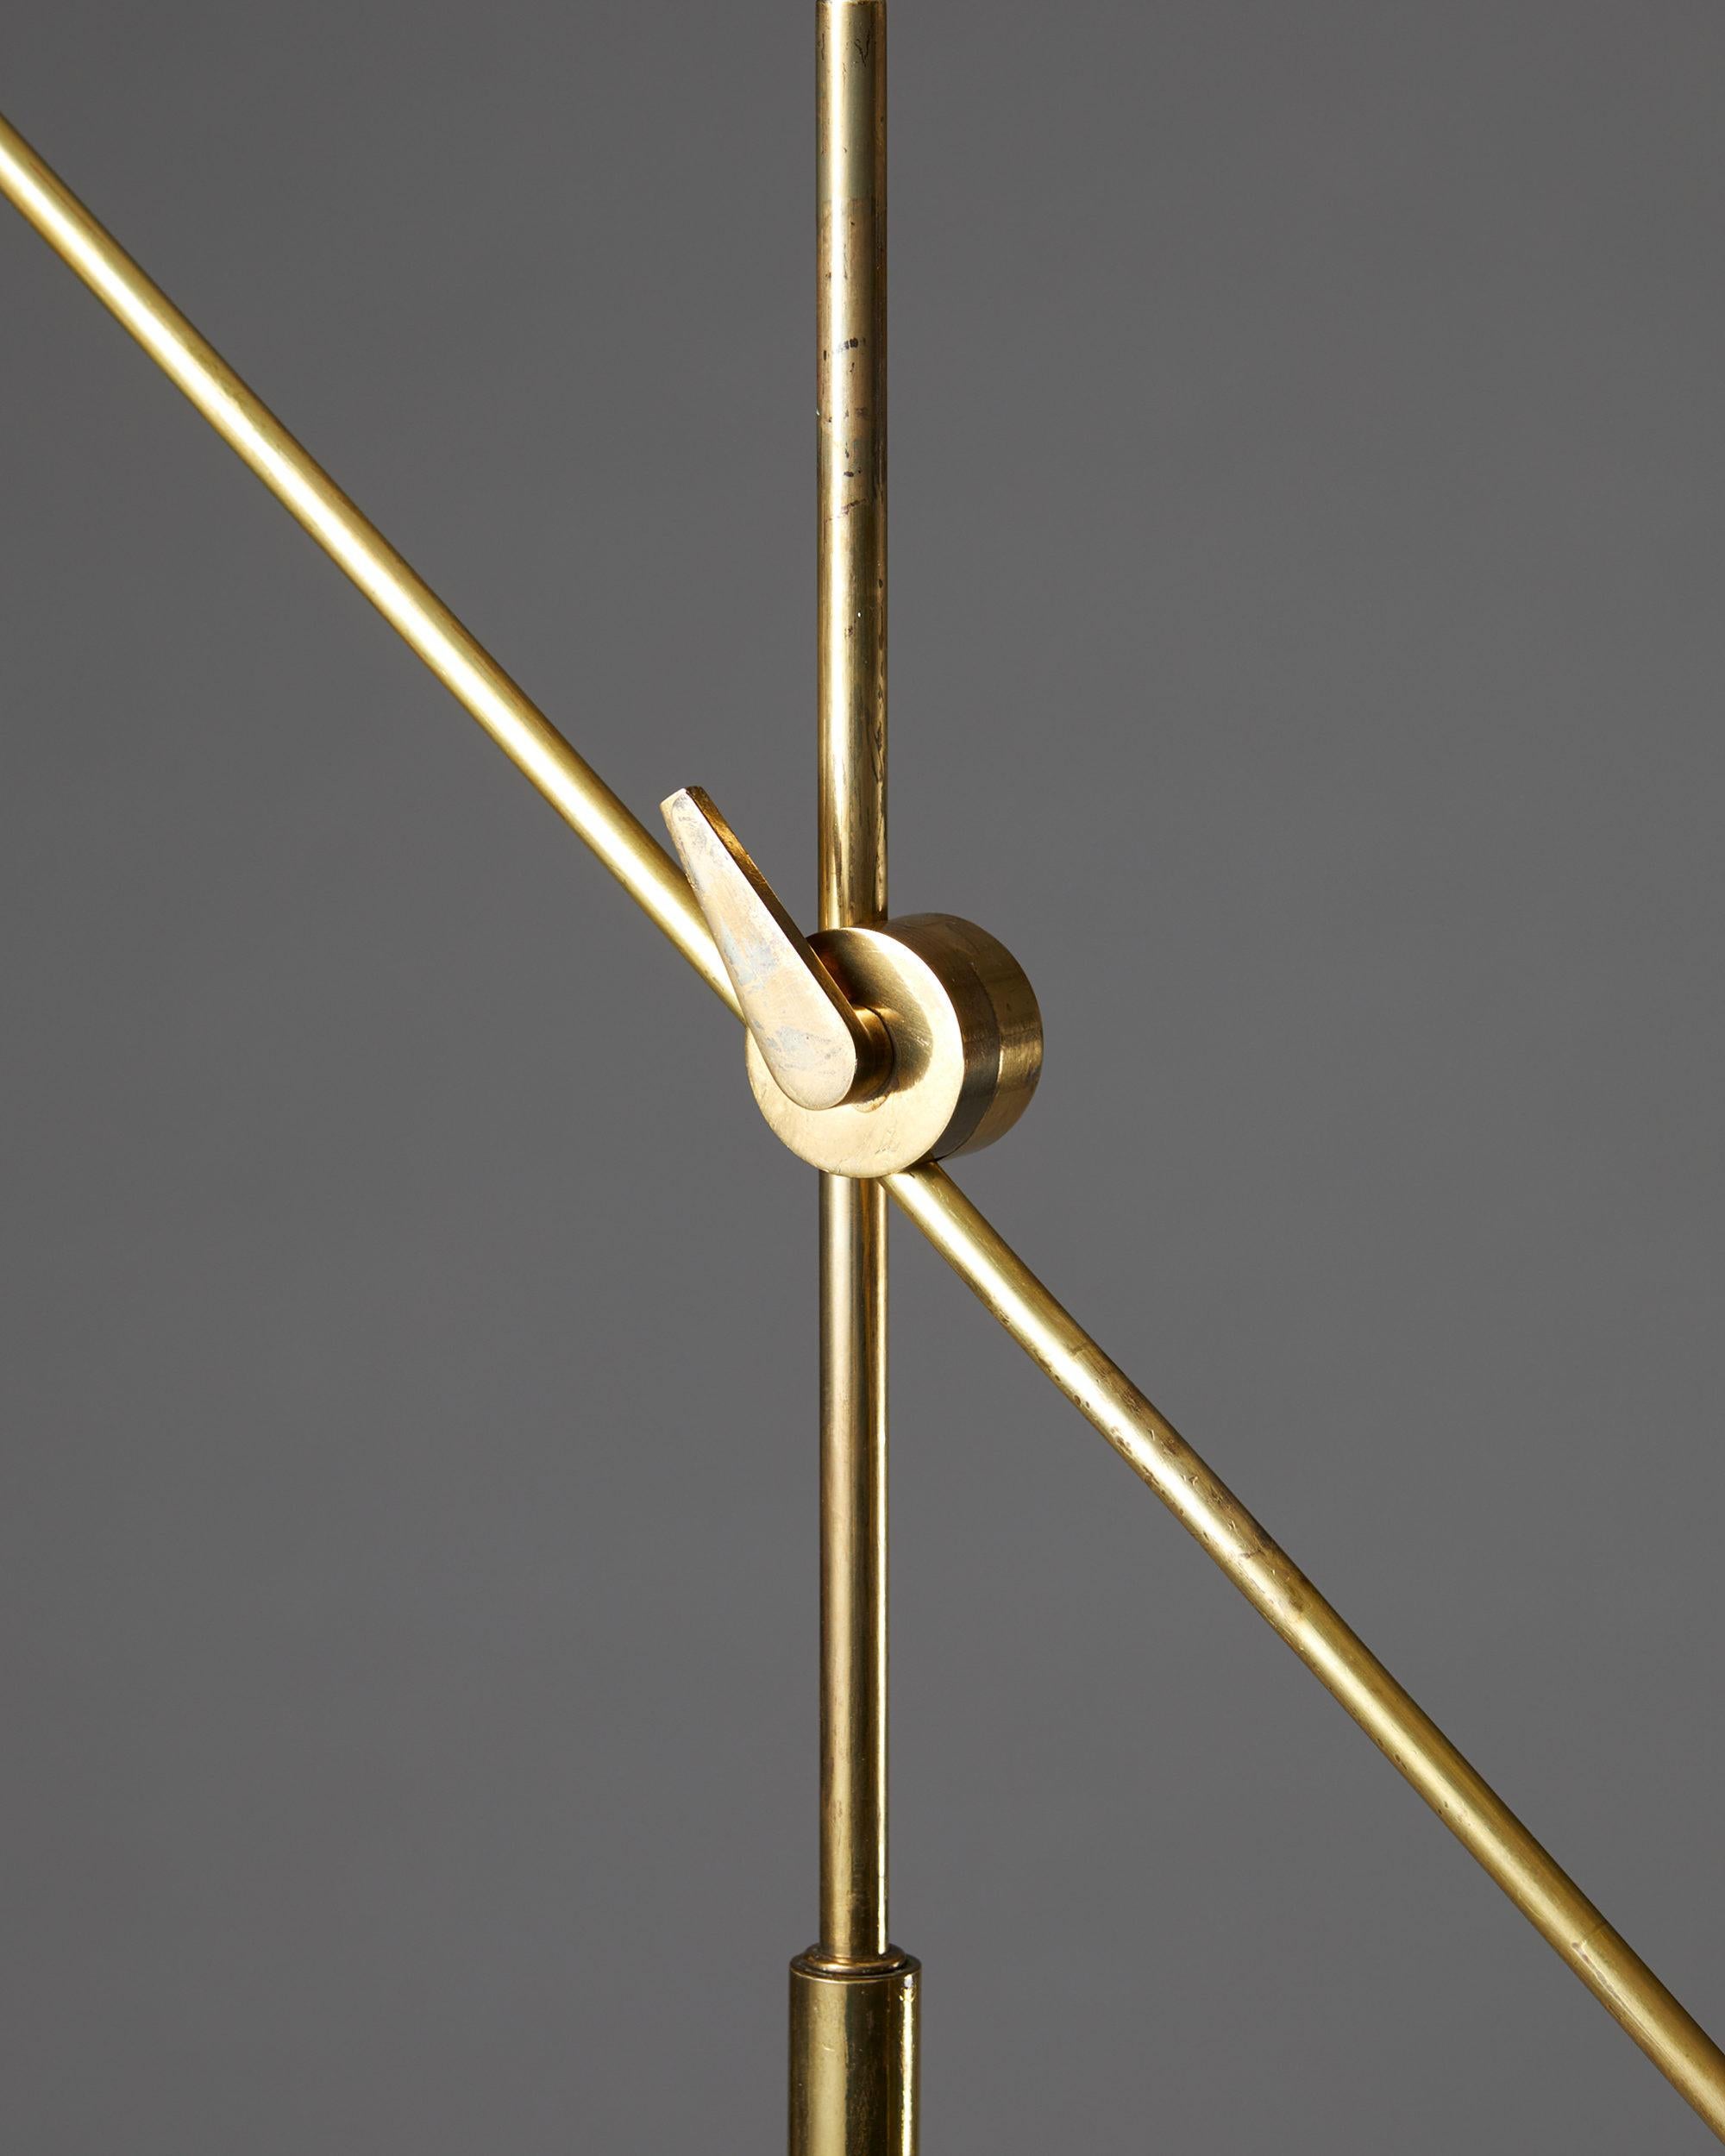 Lampadaire modèle 376 conçu par TH. Valentiner pour Poul Dinesen,
Danemark. 1960s.

Laiton nickelé.

Dimensions : 
H : 145 cm / 57